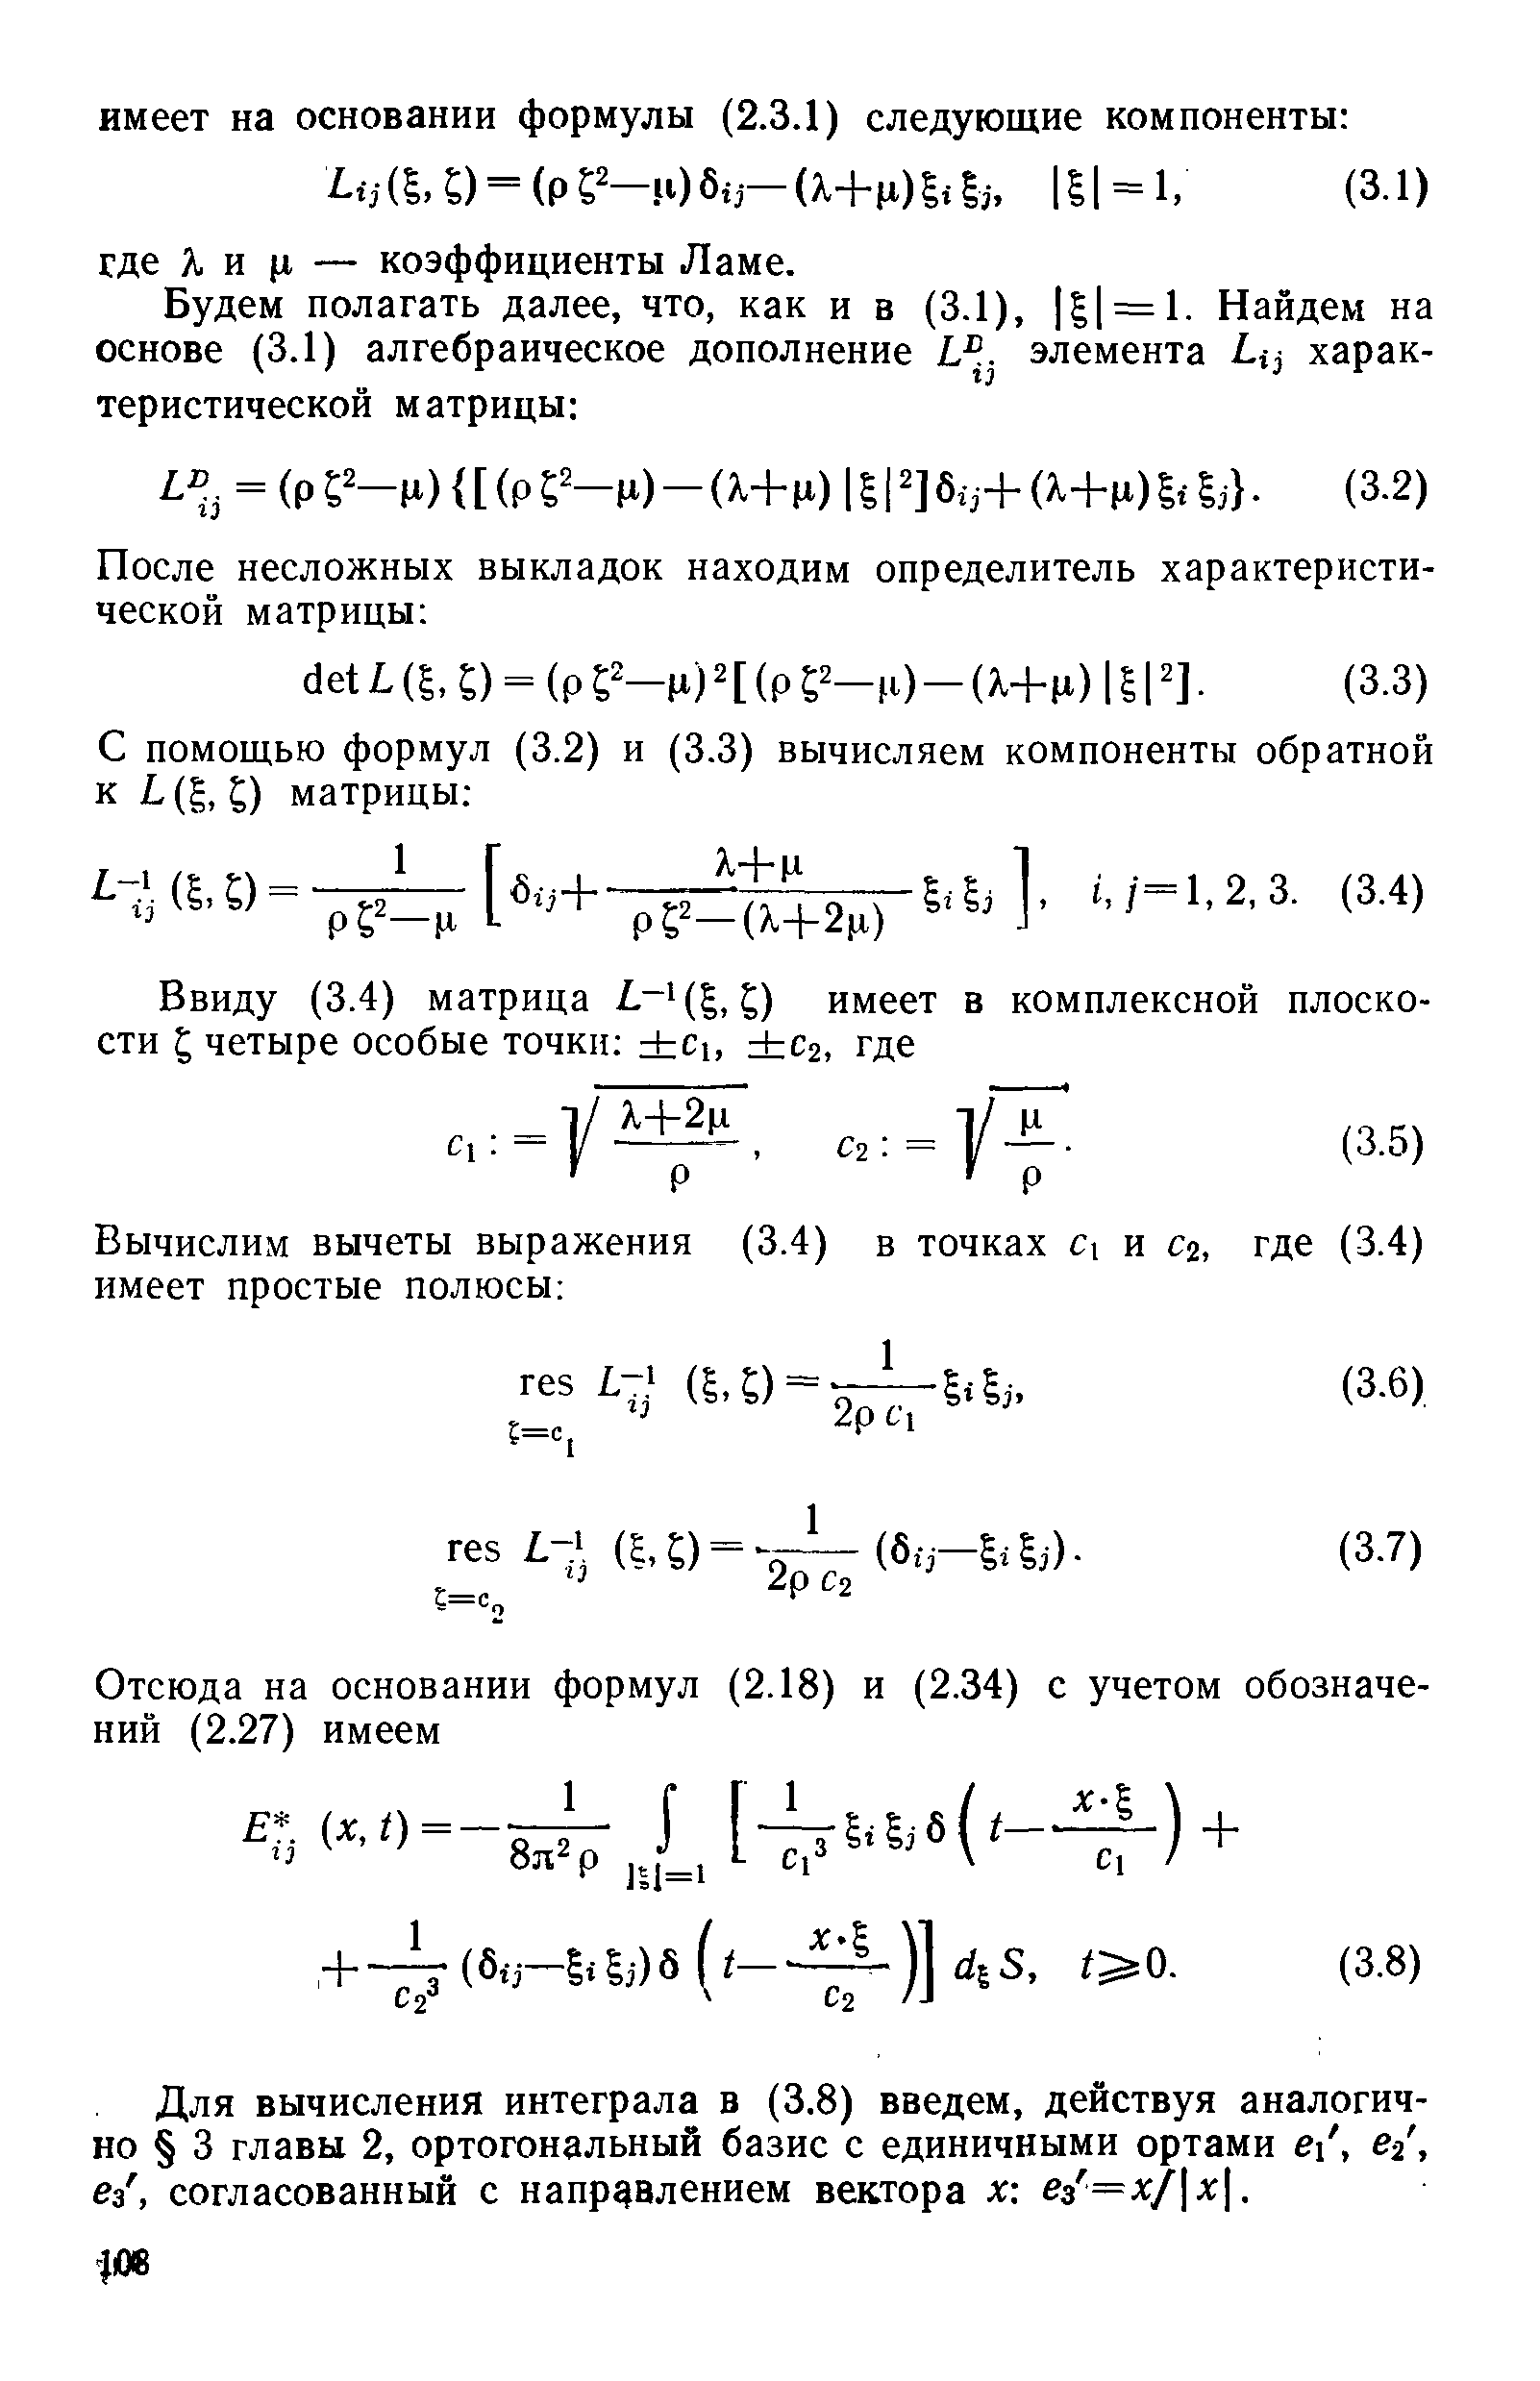 Для вычисления интеграла в (3.8) введем, действуя аналогично 3 главы 2, ортогональный базис с единичными ортами е , е-2, ез, согласованный с направлением вектора х ез =х/ х. 
